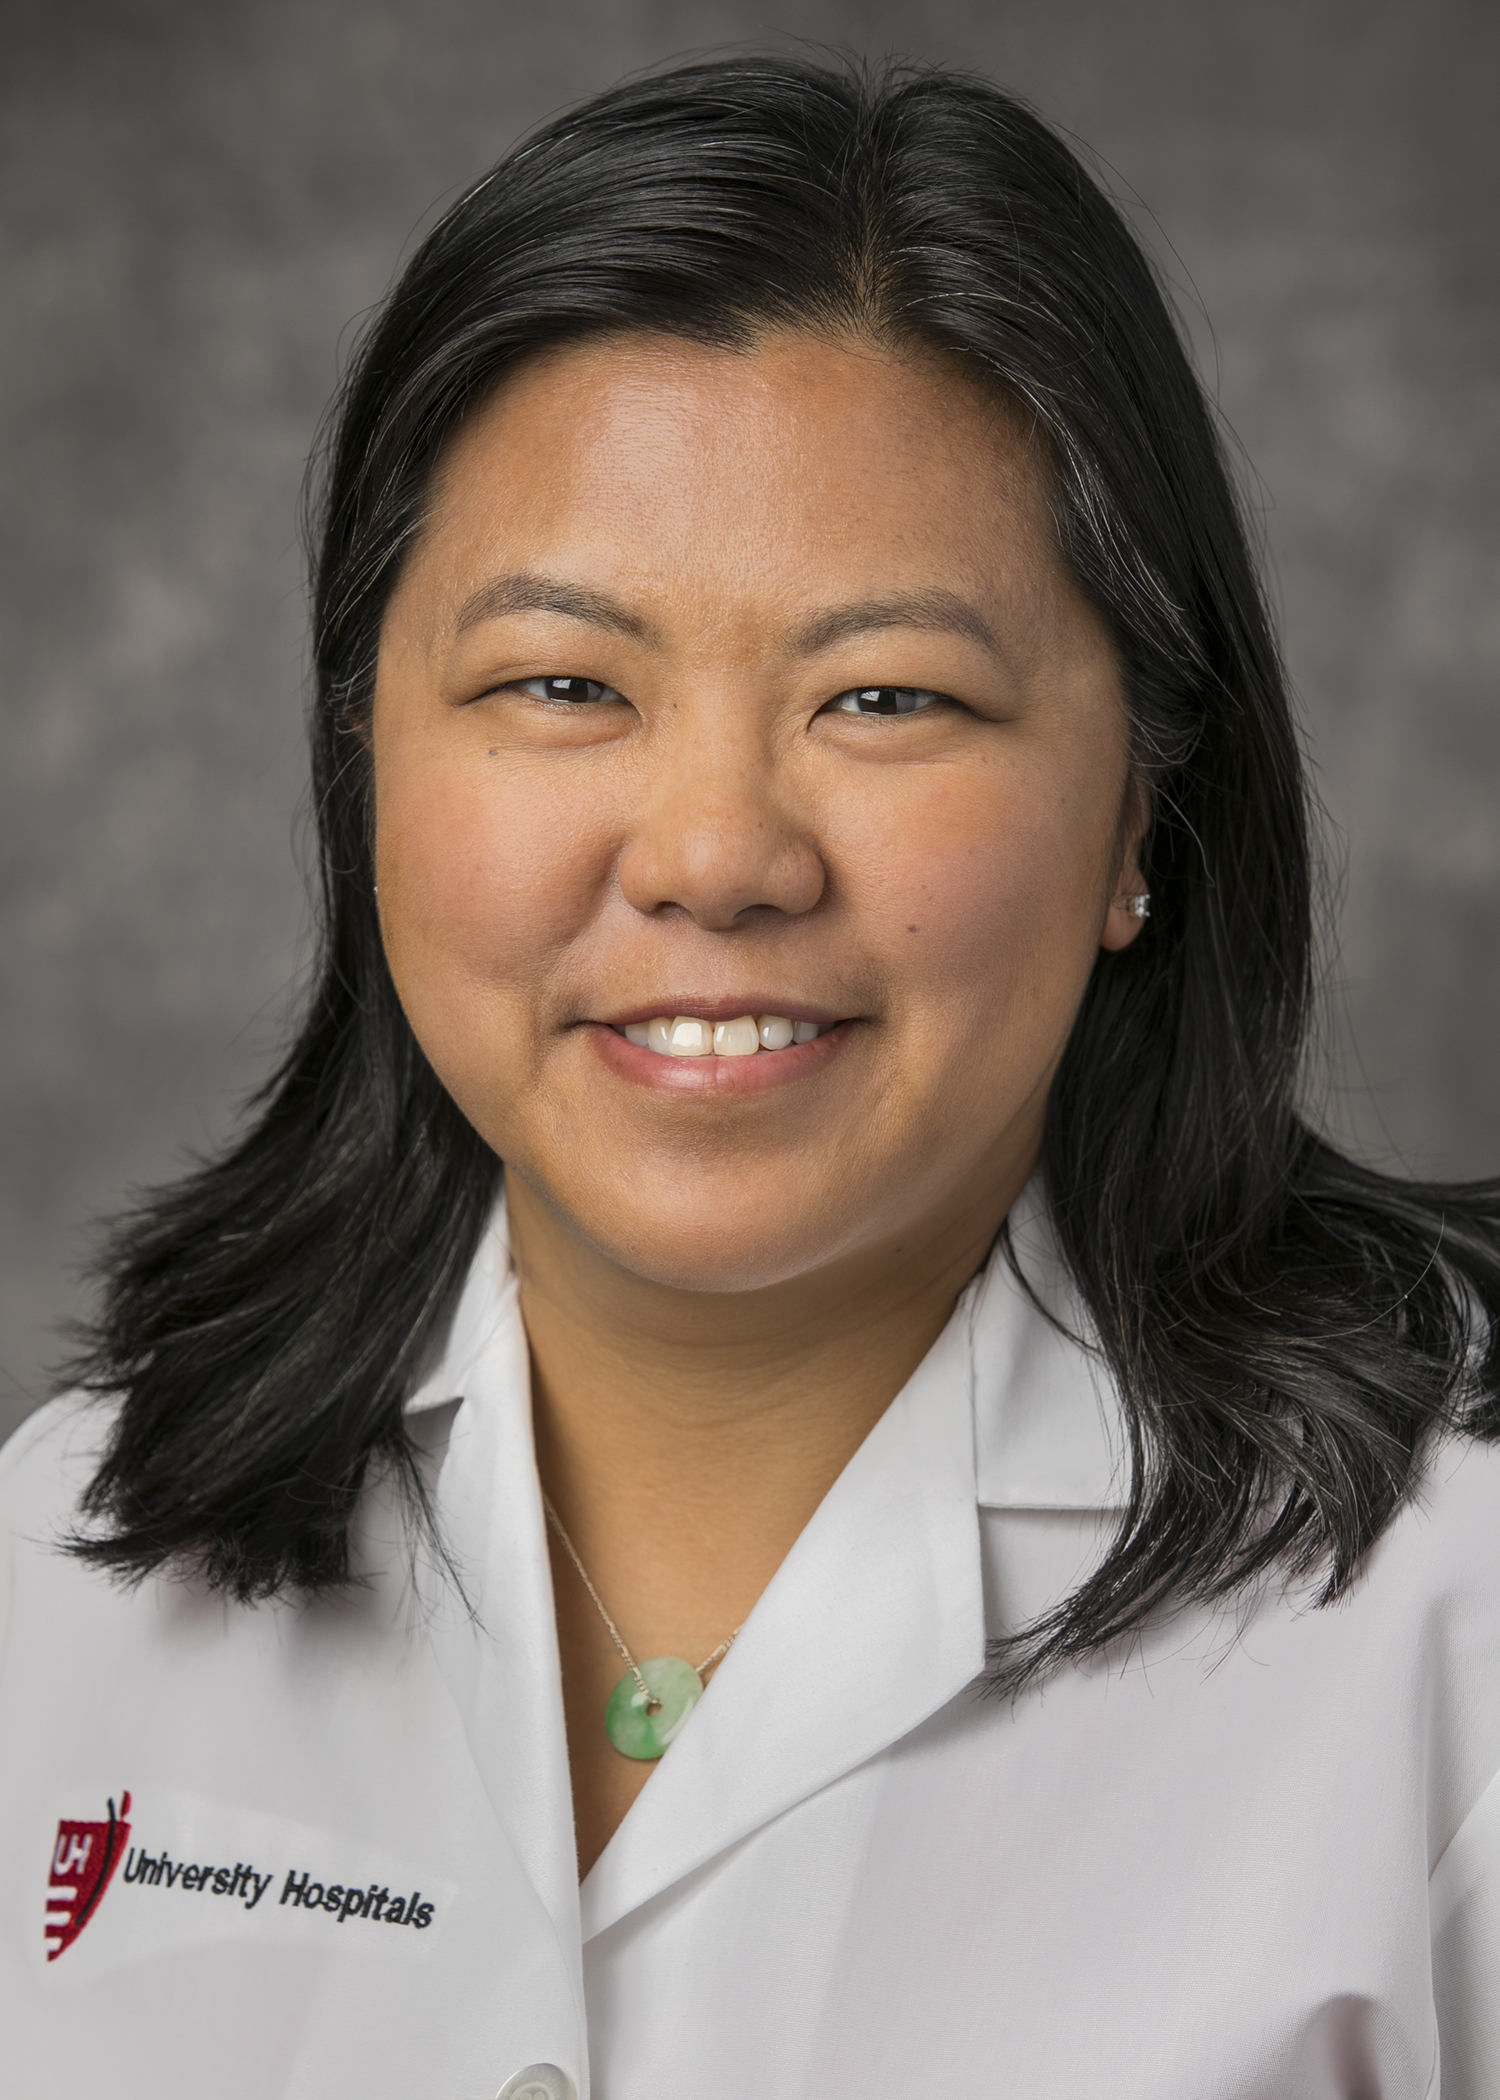 Victoria Wu, MD